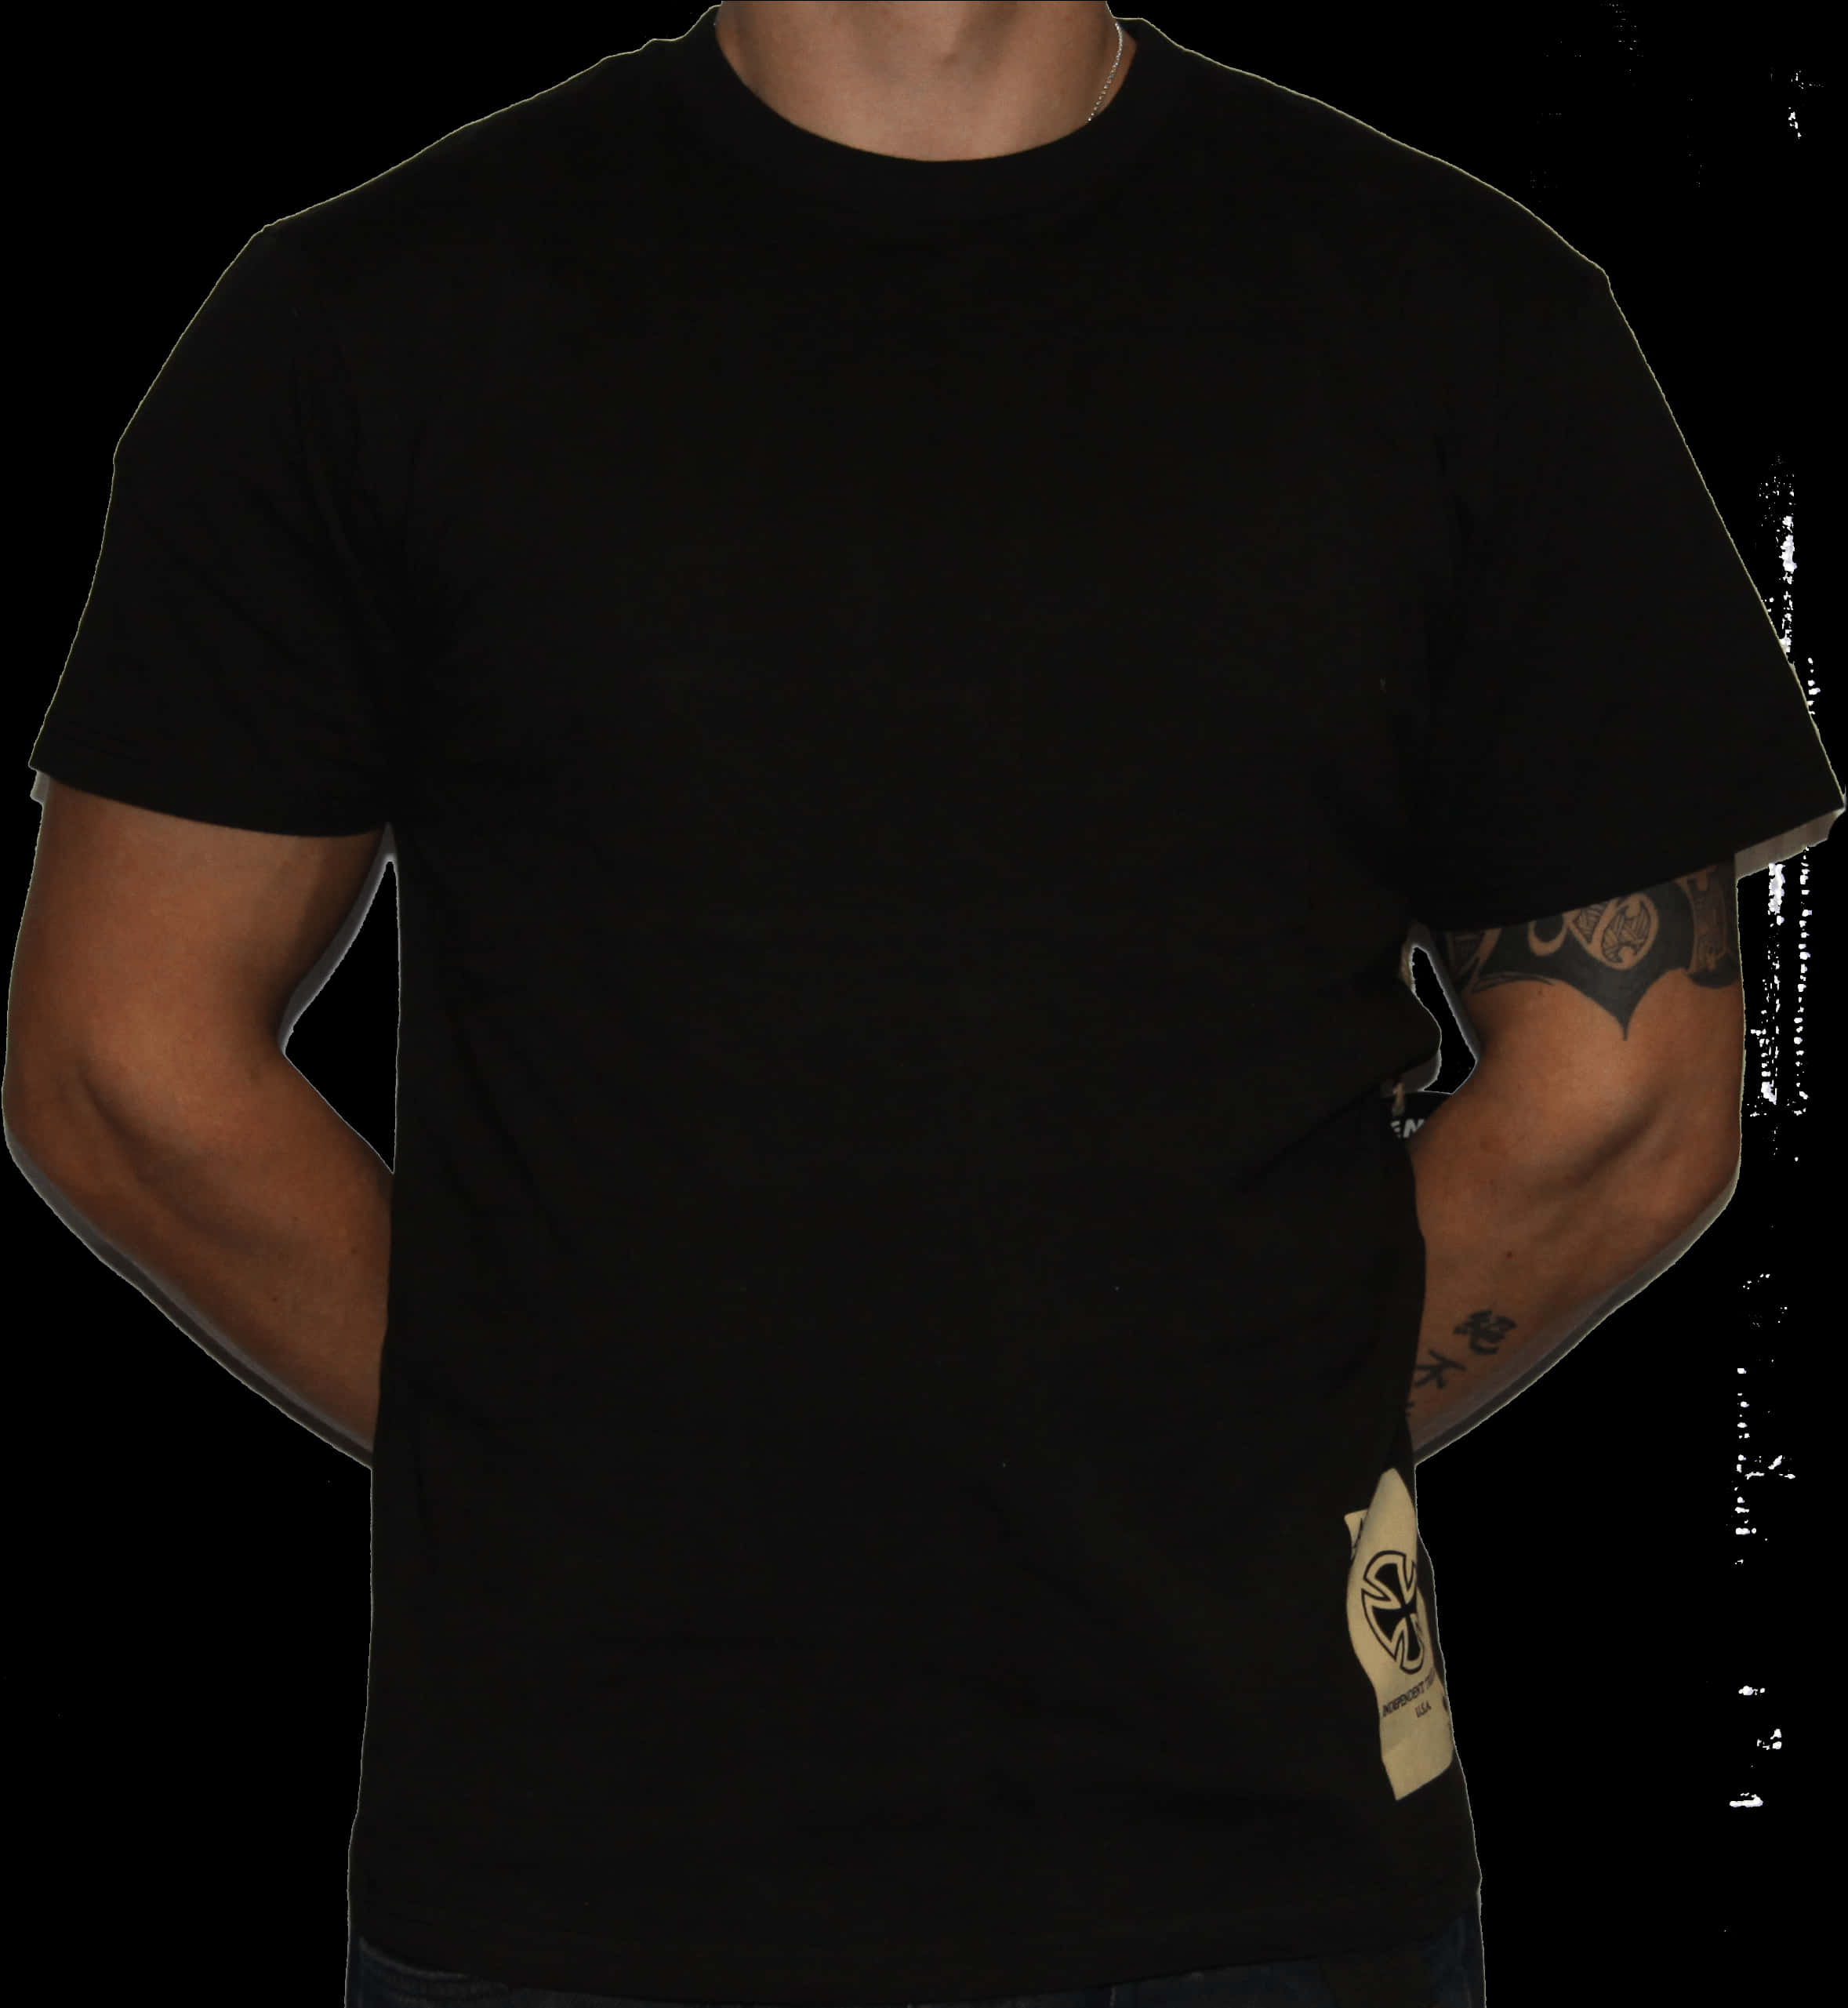 A Man In A Black Shirt